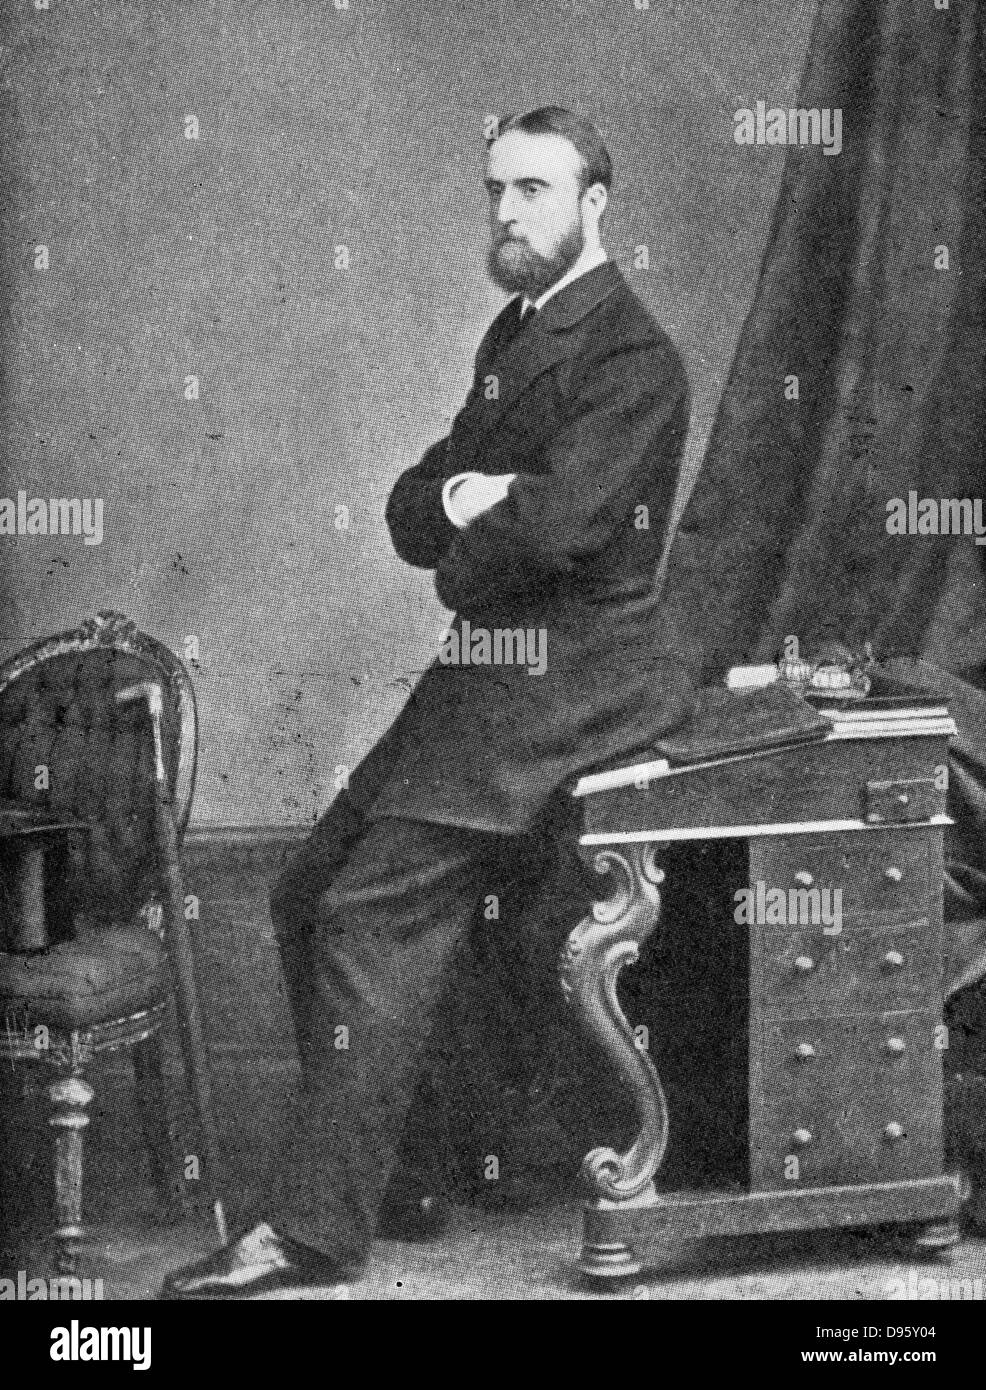 Charles Stuart Parnell, 19. Jahrhundert, irische Politiker, c 1874-1891. Parnell (1846-1891) war ein Anhänger der Irish Land League, die für eine Landreform und gegen die Verwaltung der Ländereien in Irland von absentee landlords. Stockfoto